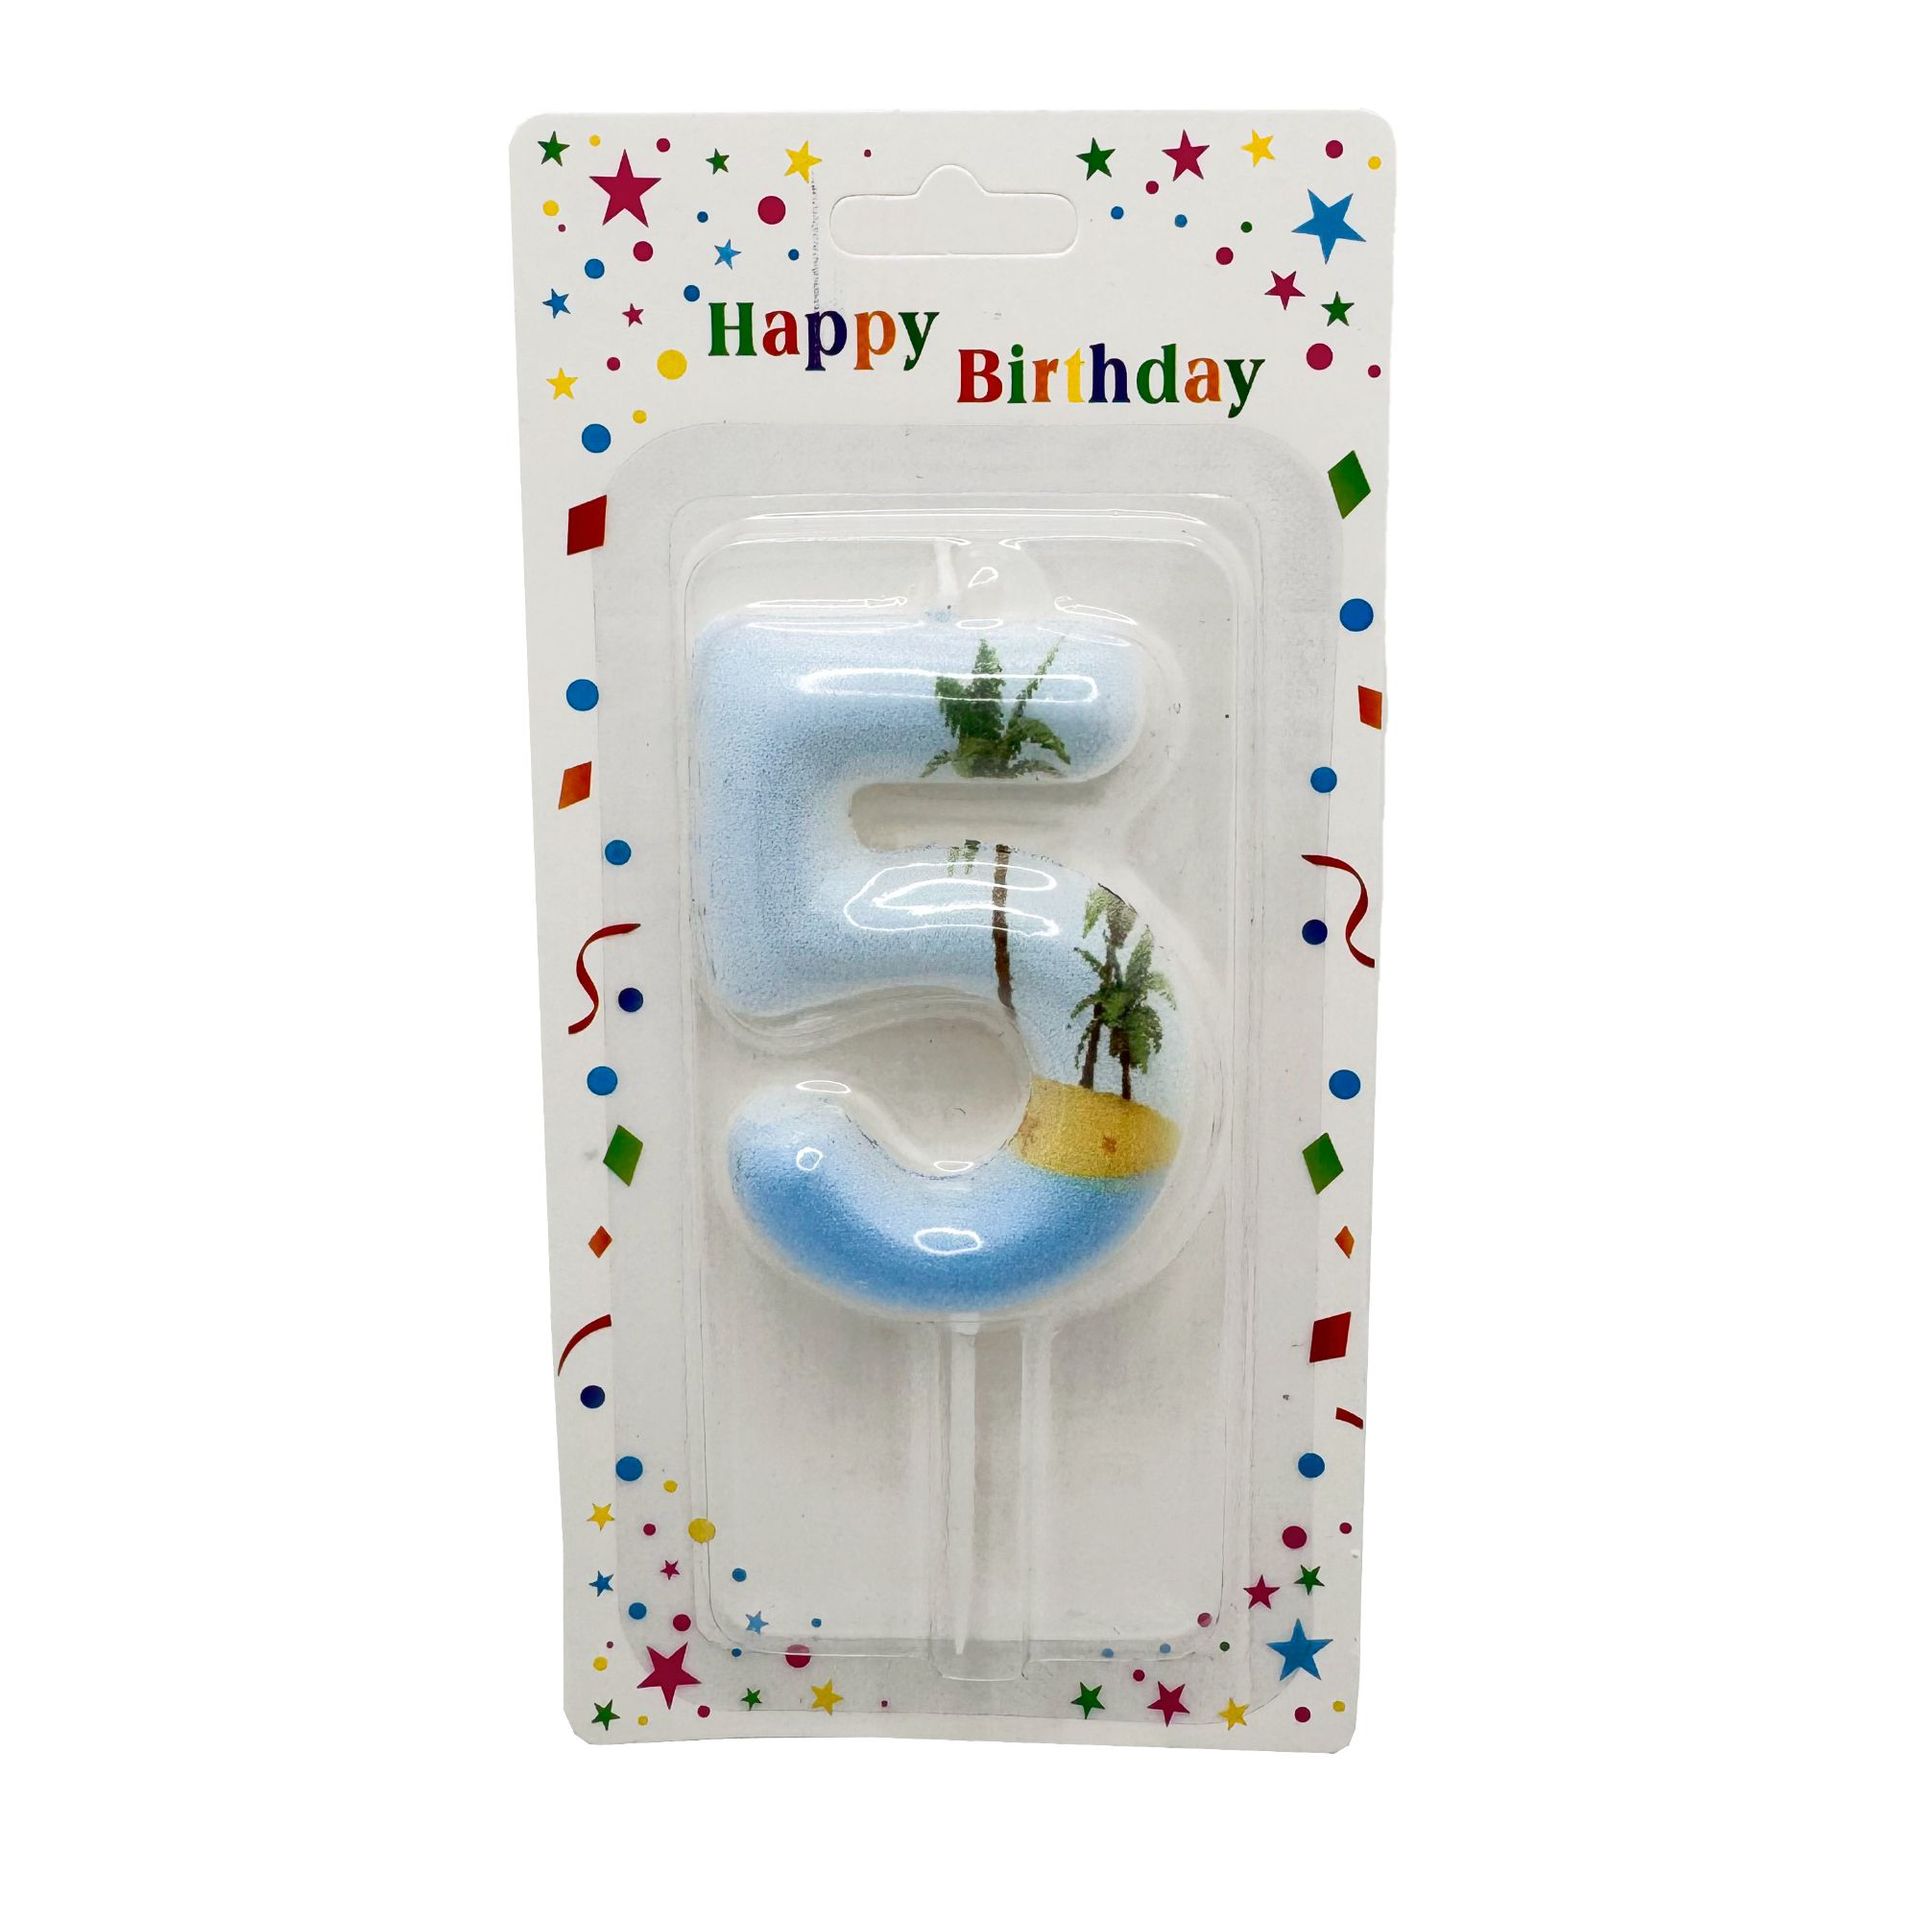 新款创意夏日沙滩系列儿童数字生日蜡烛派对烘焙甜品装饰用品